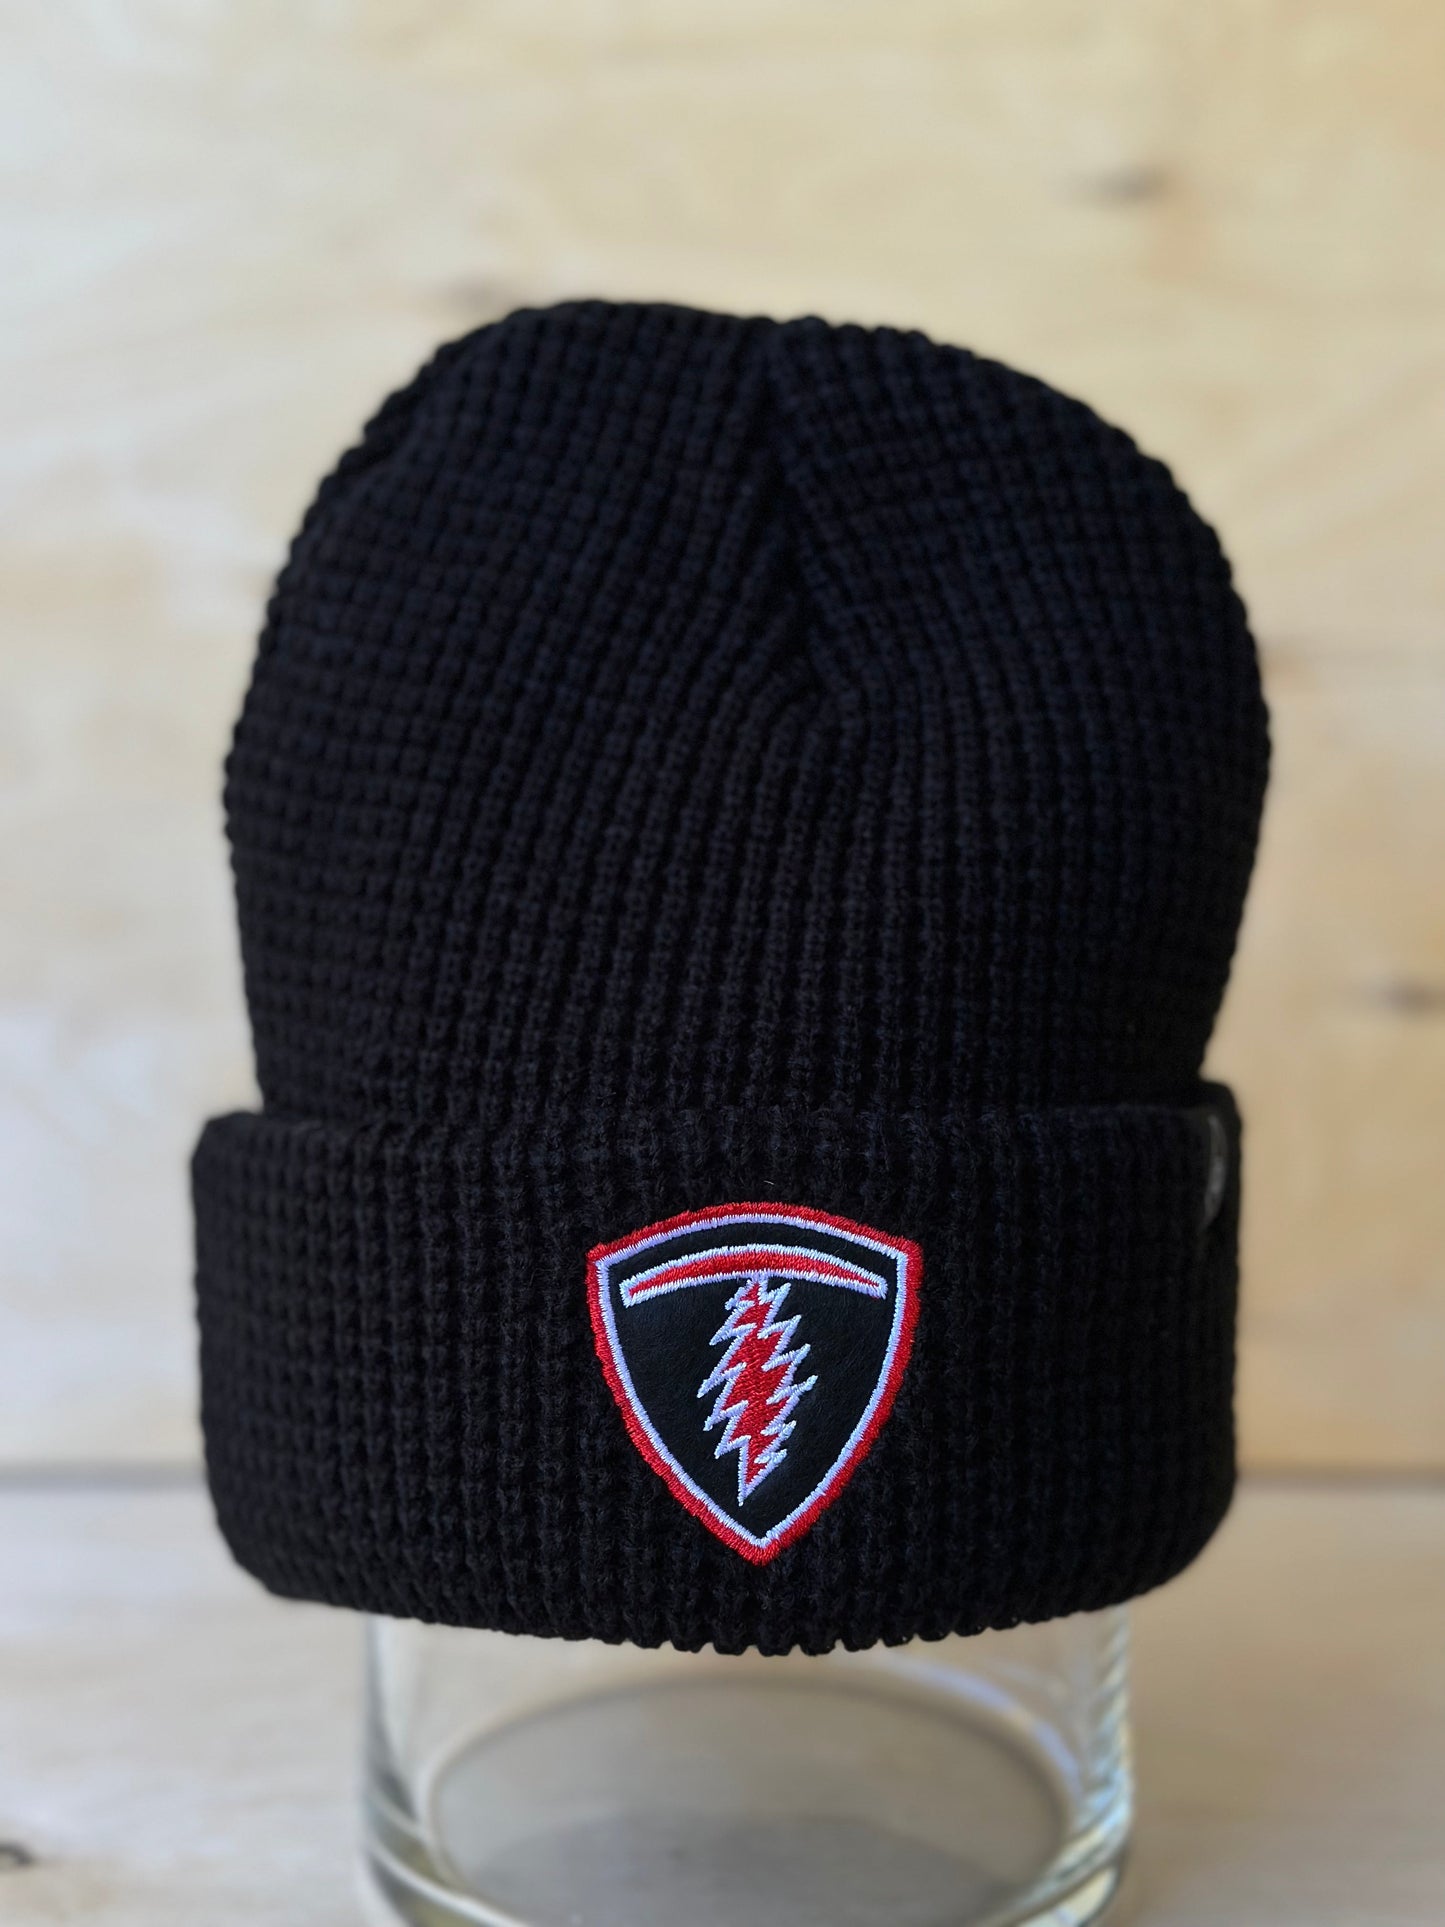 T Bolt Telluride Beanie Knit Hat Black